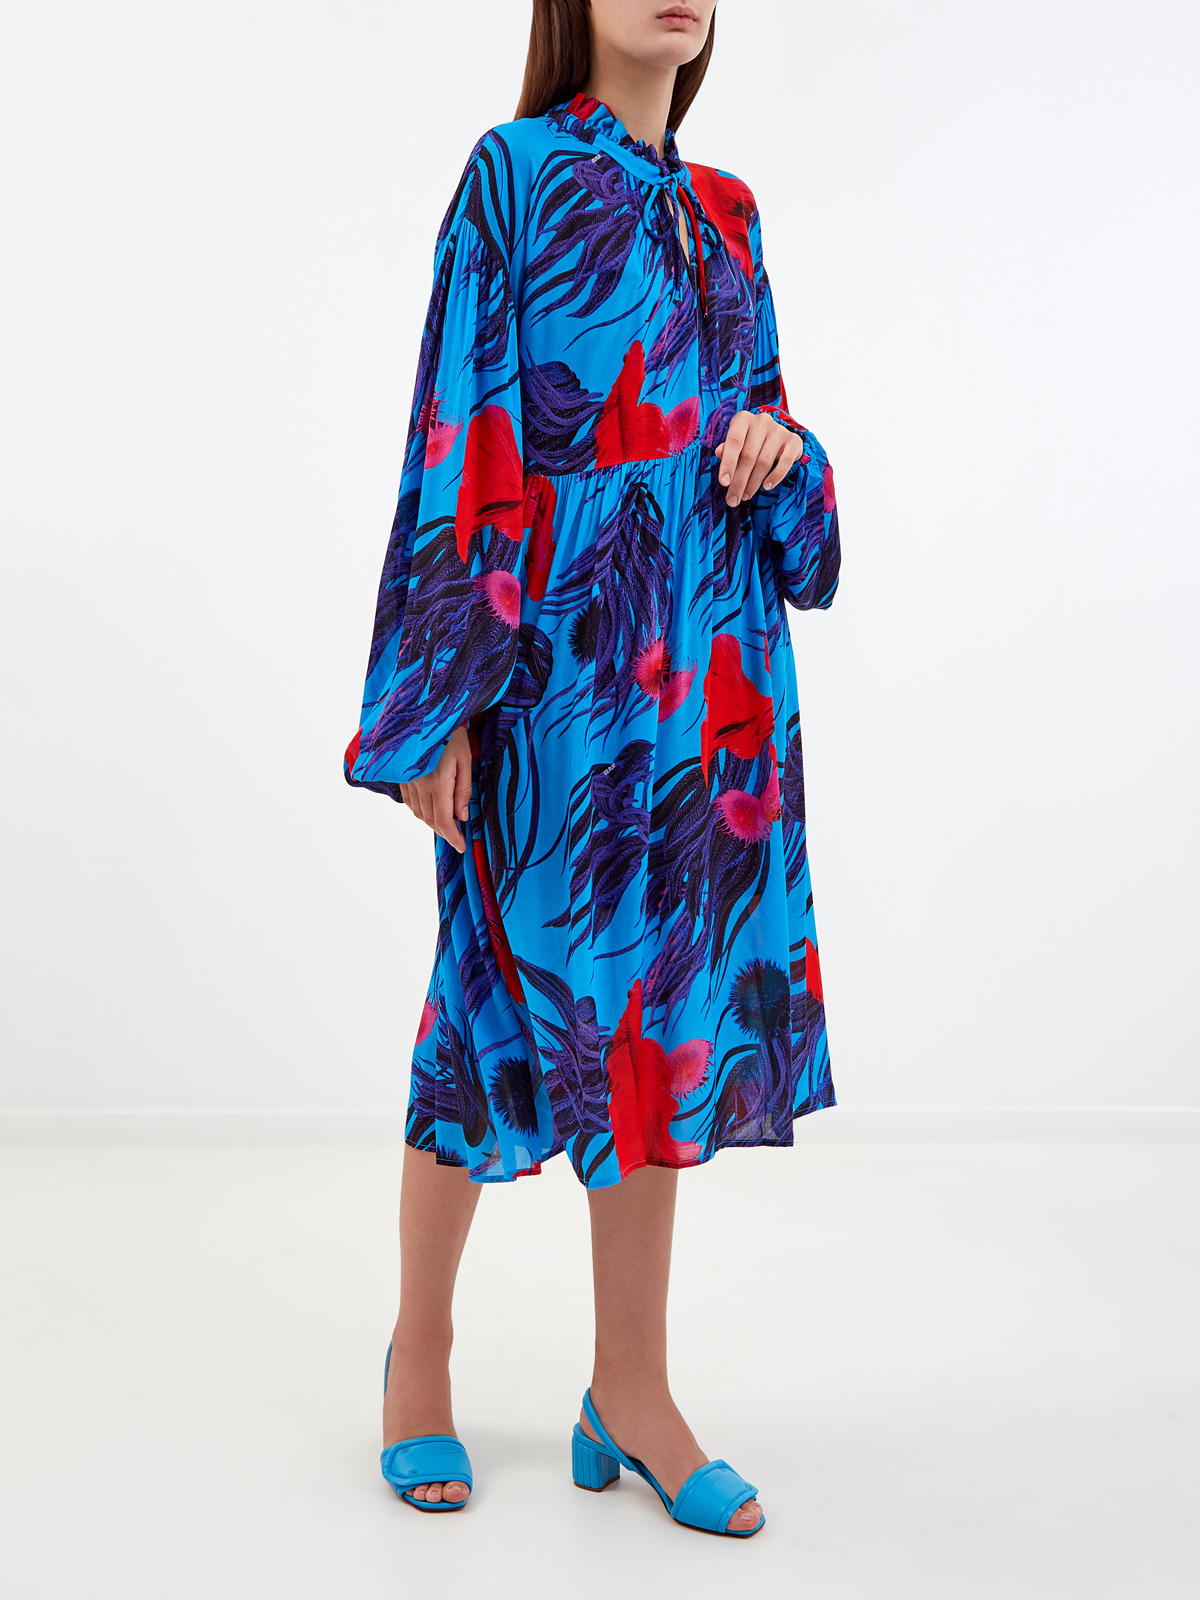 Яркое платье-миди из шифона с флористическим принтом ICE PLAY, цвет синий, размер S;M;L;XL - фото 3